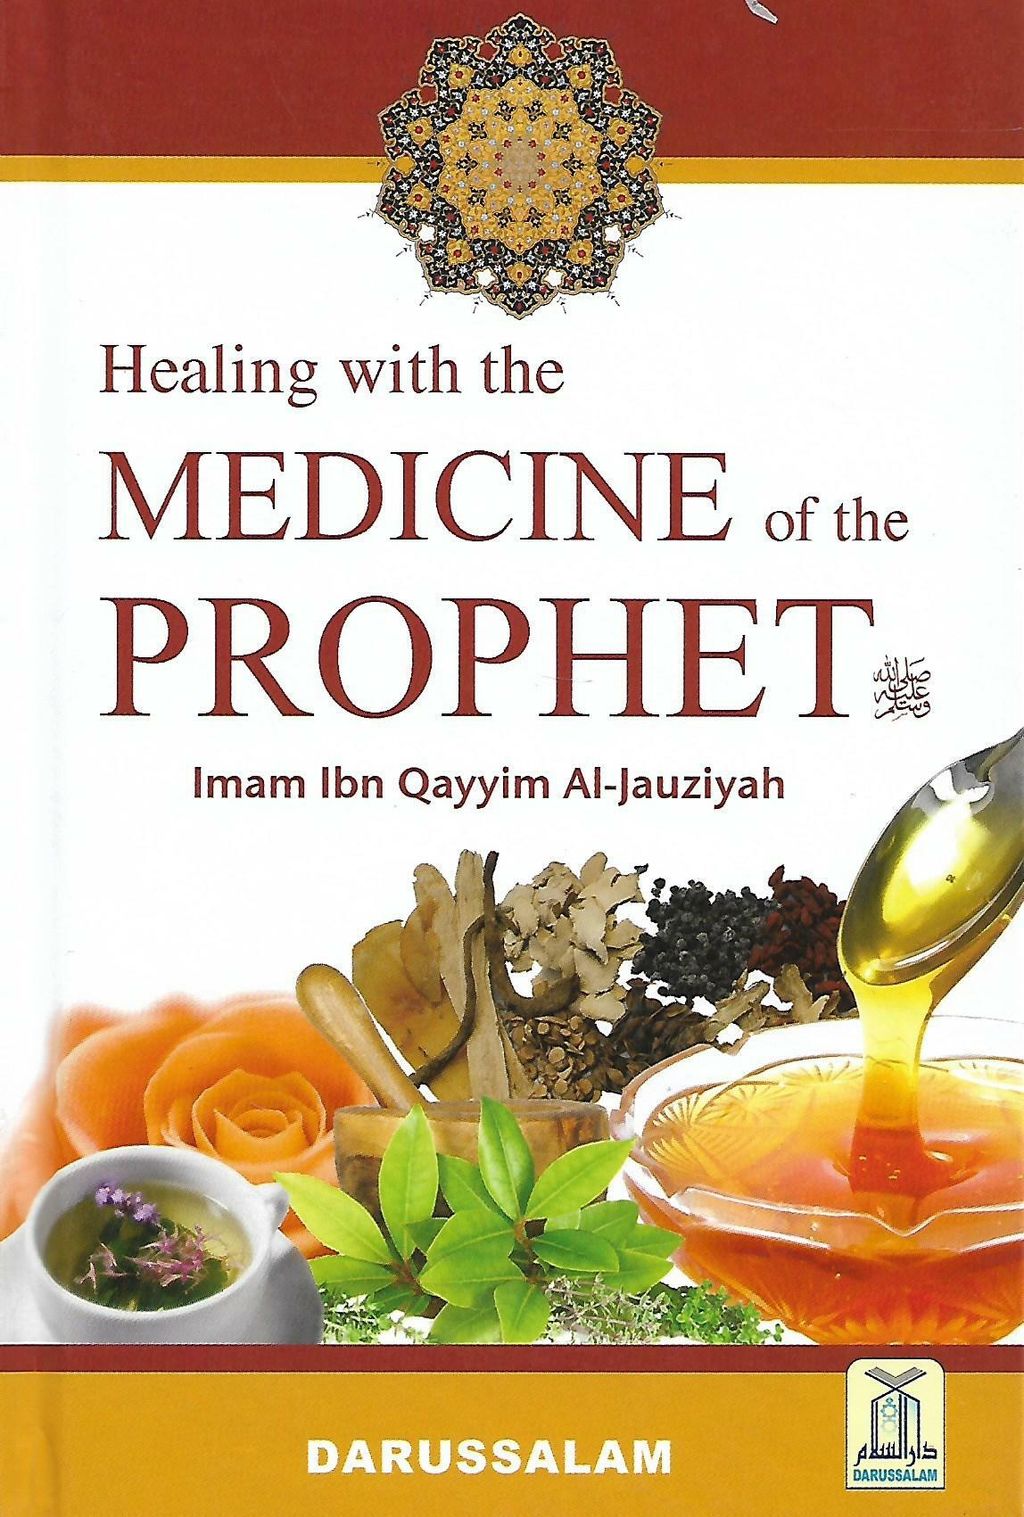 medicine of the prophet rm71.30_0001.jpg